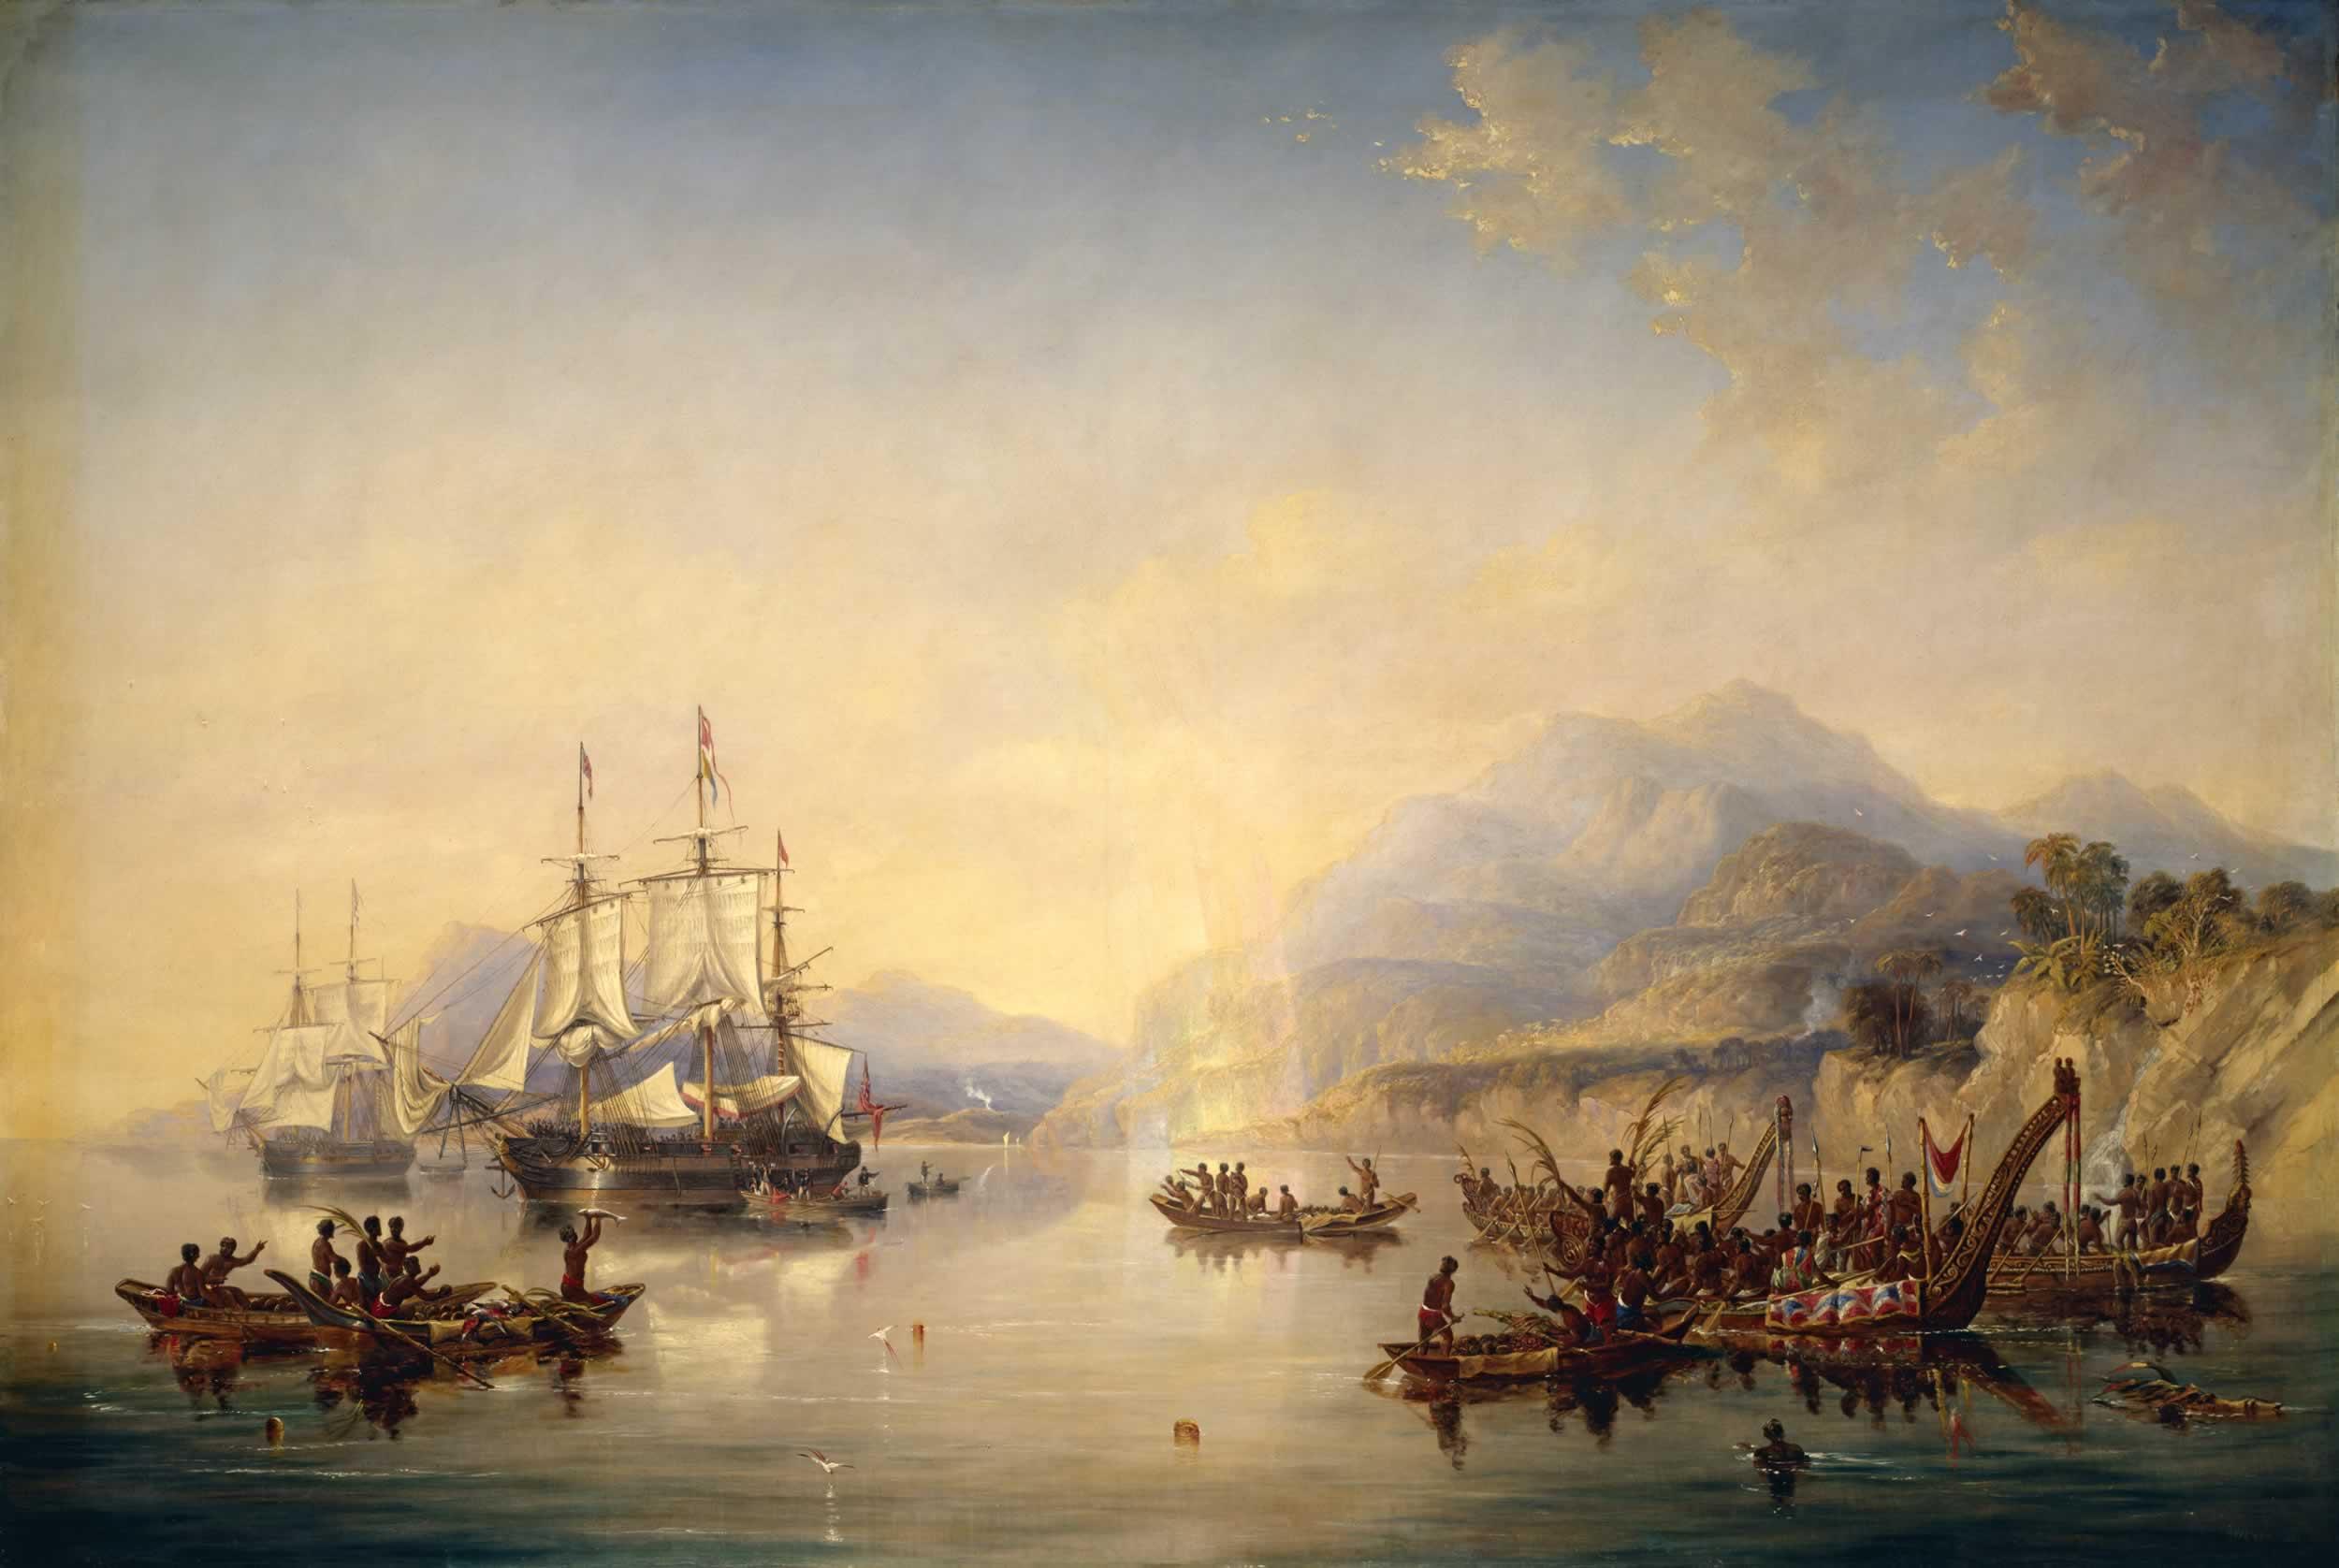 Az Erebus és a Terror Új-Zélandon 1841-ben, John Wilson Carmichael festményén